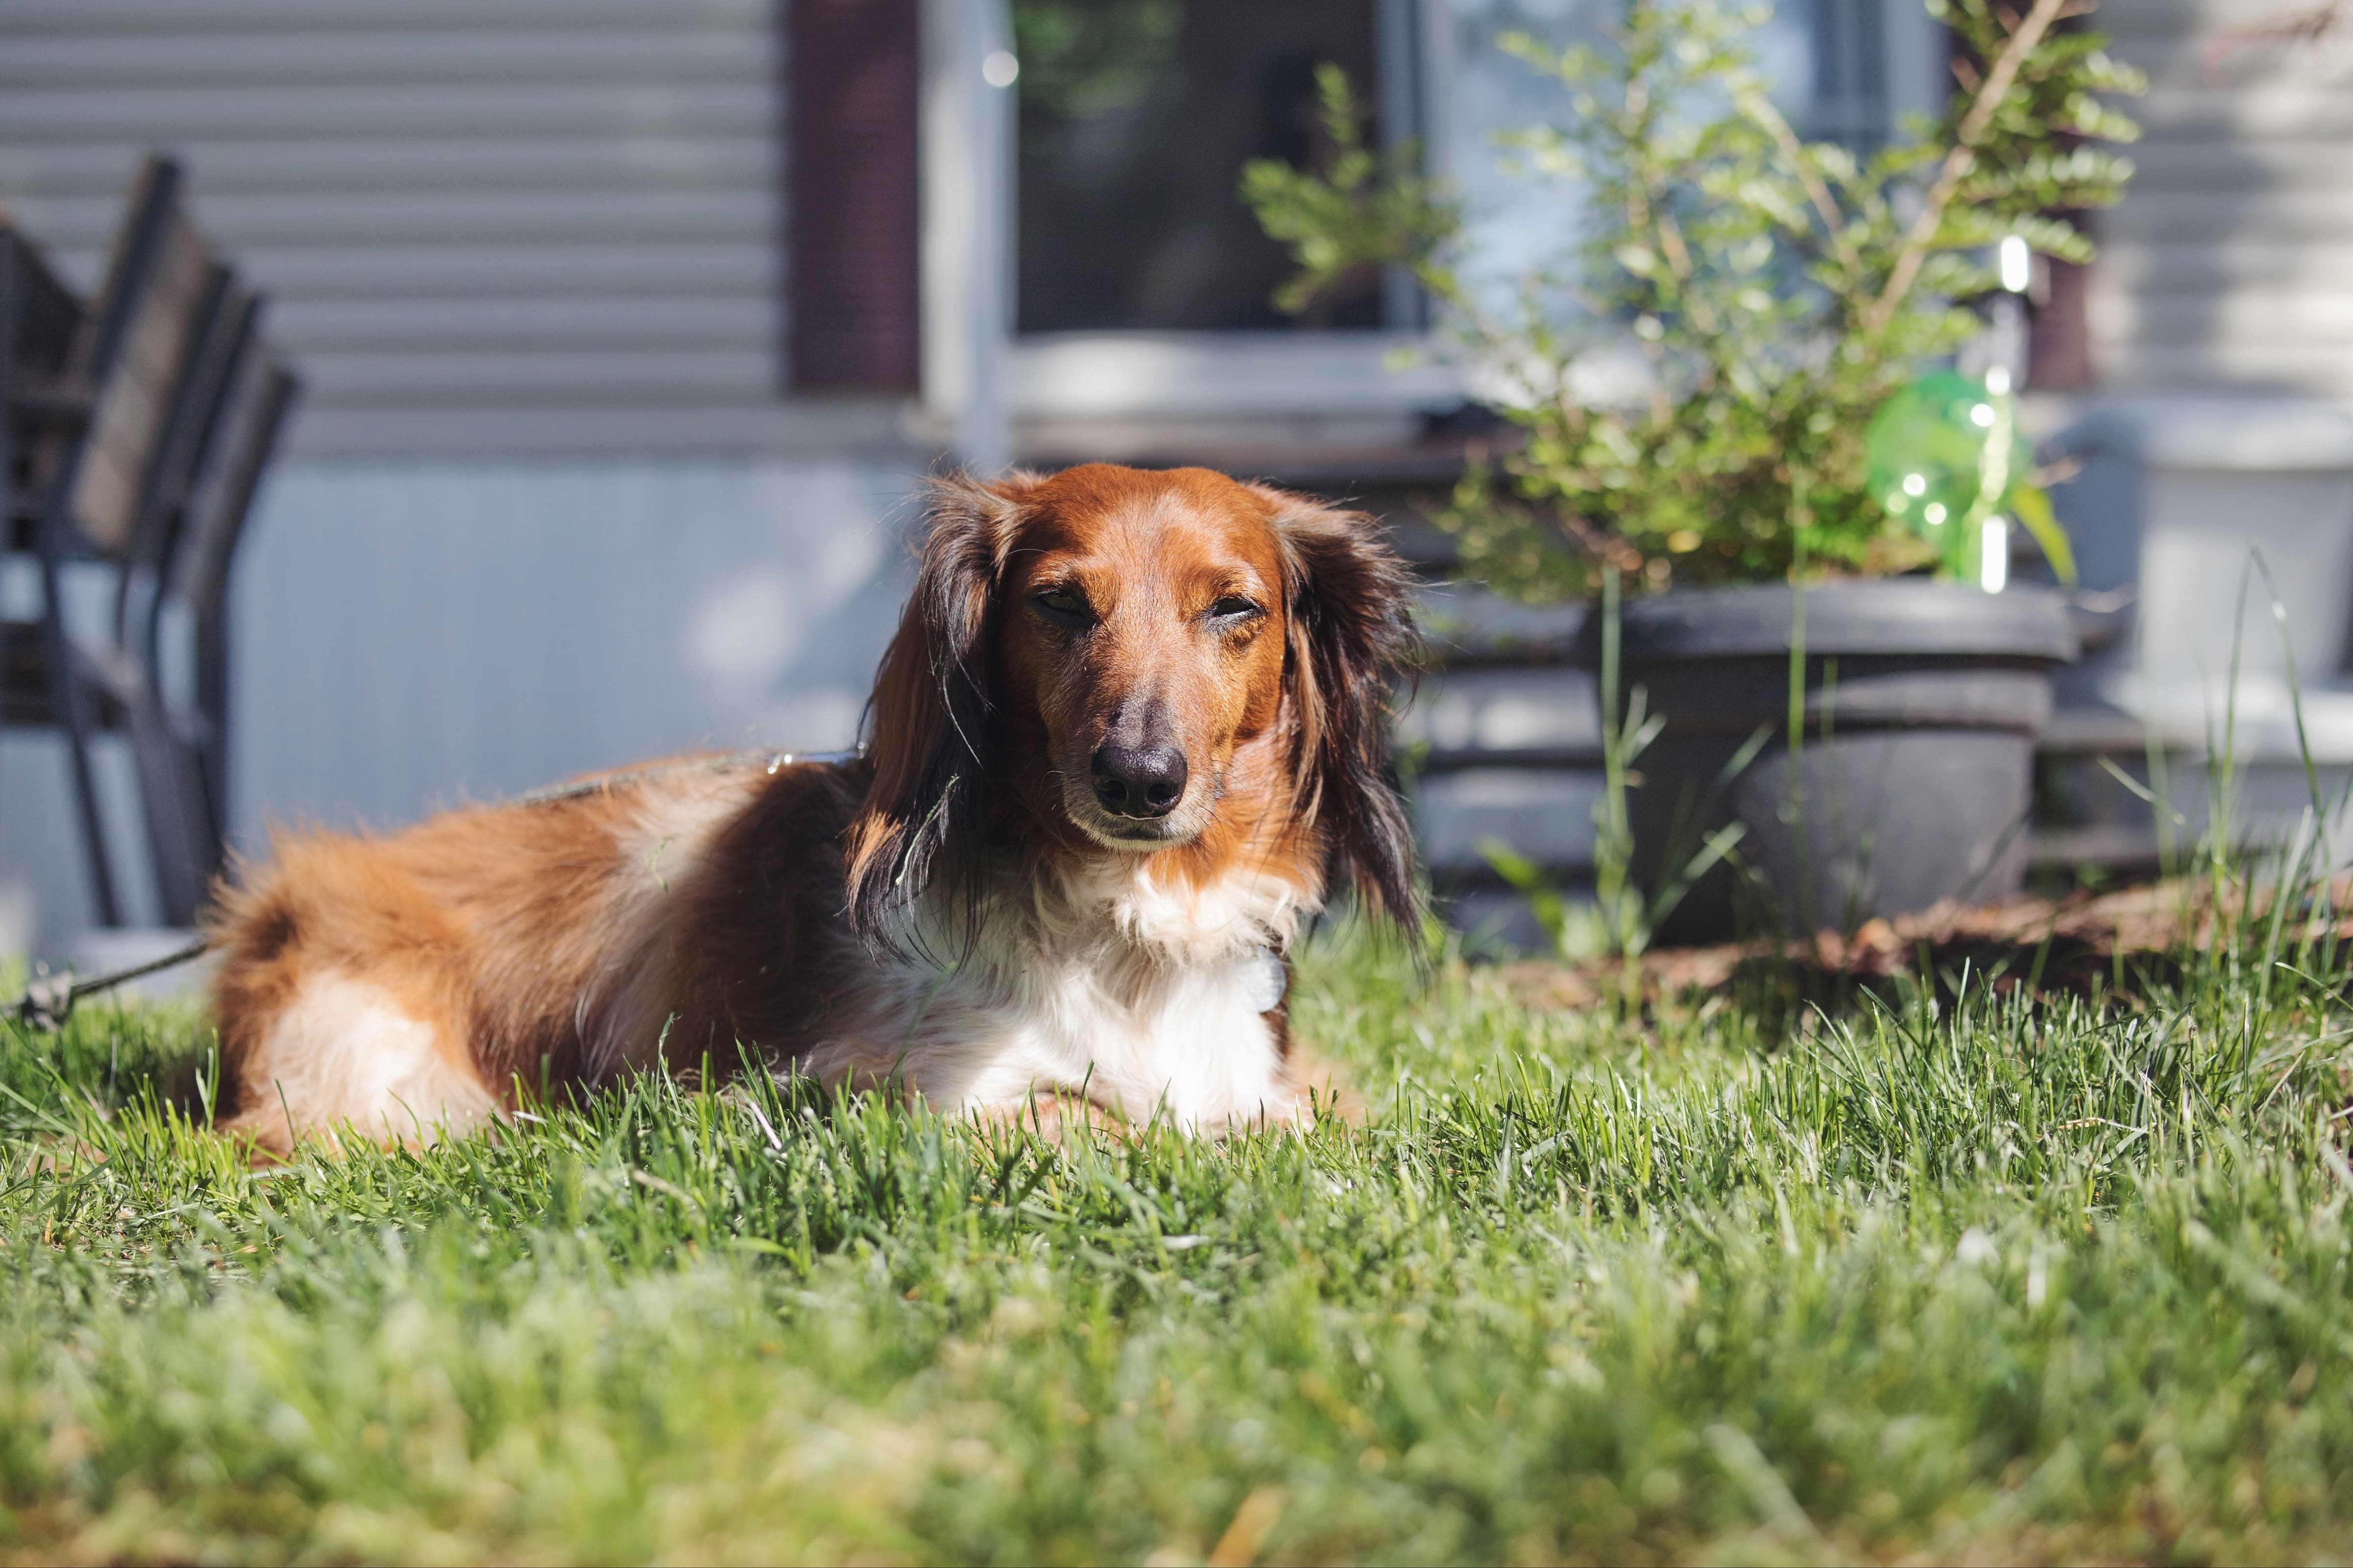 Imagem de um dachshund peludo marrom e branco, sentado na grama. Ao fundo, há vasos com plantas, uma casa e cadeiras.